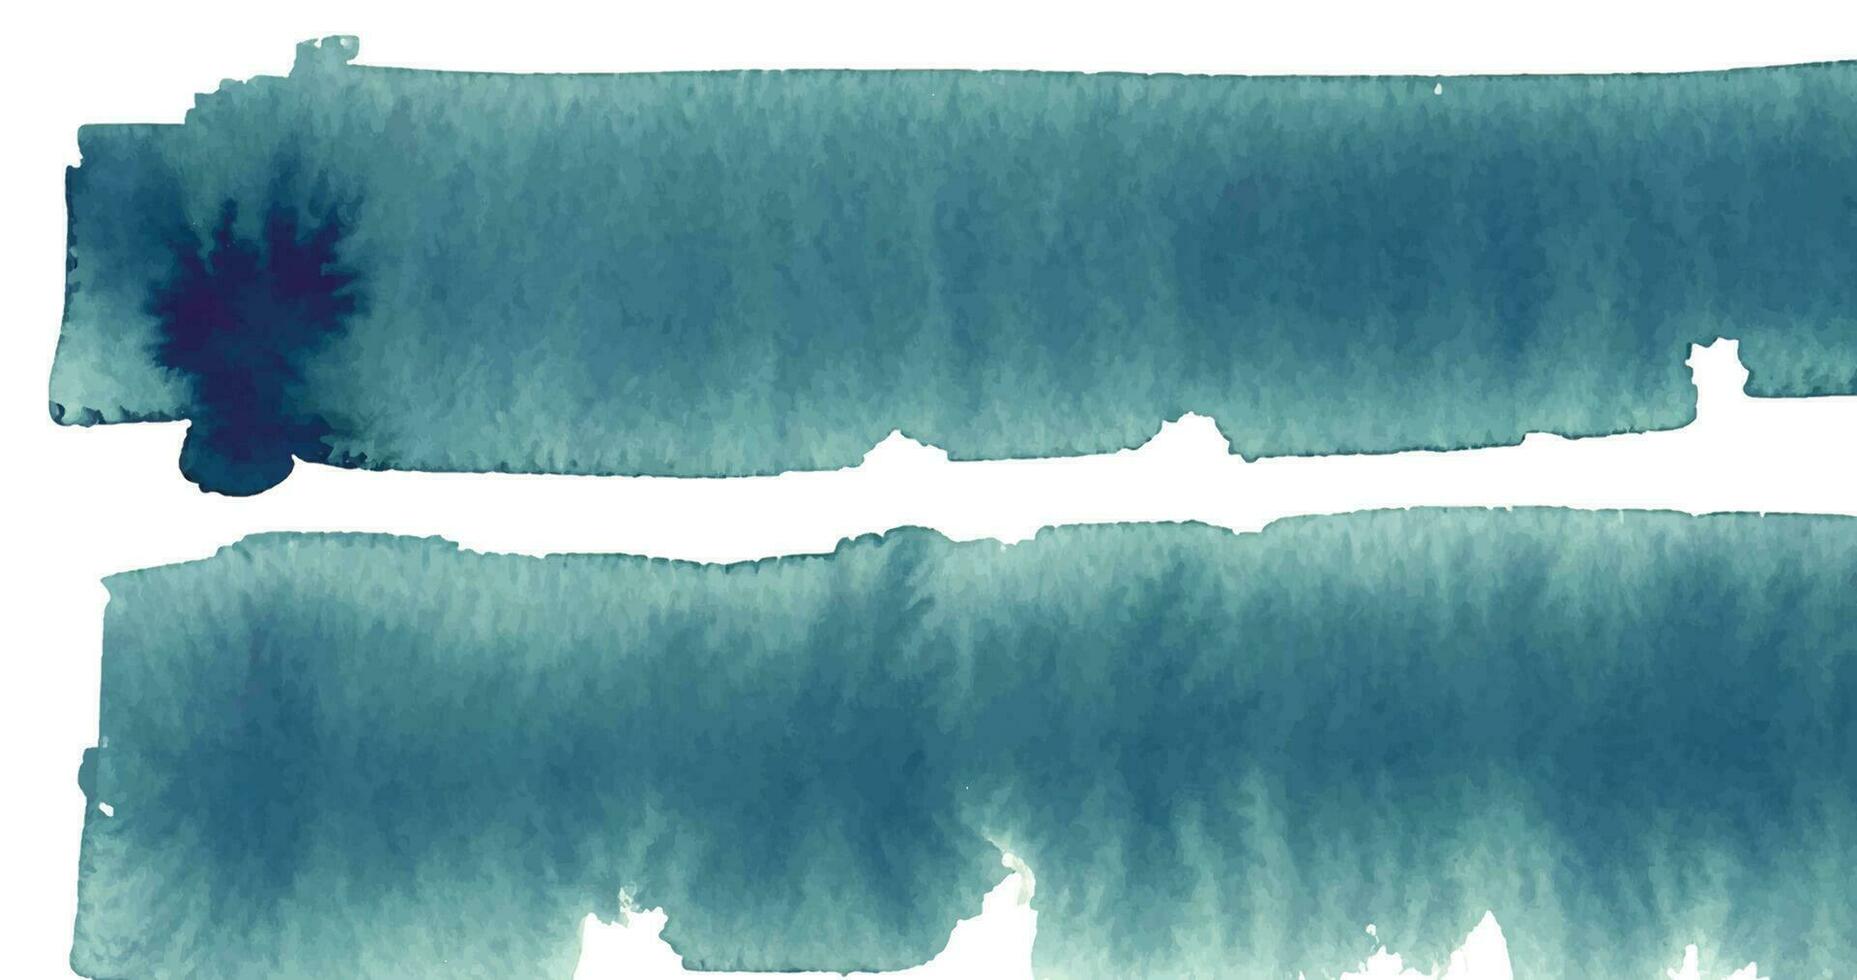 insmord vattenfärg nyanser ram, mjuk turkos Färg vattenfärg illustration, kreativ bakgrund. akvarell målad texturerad mall för årgång design, inbjudan kort vektor